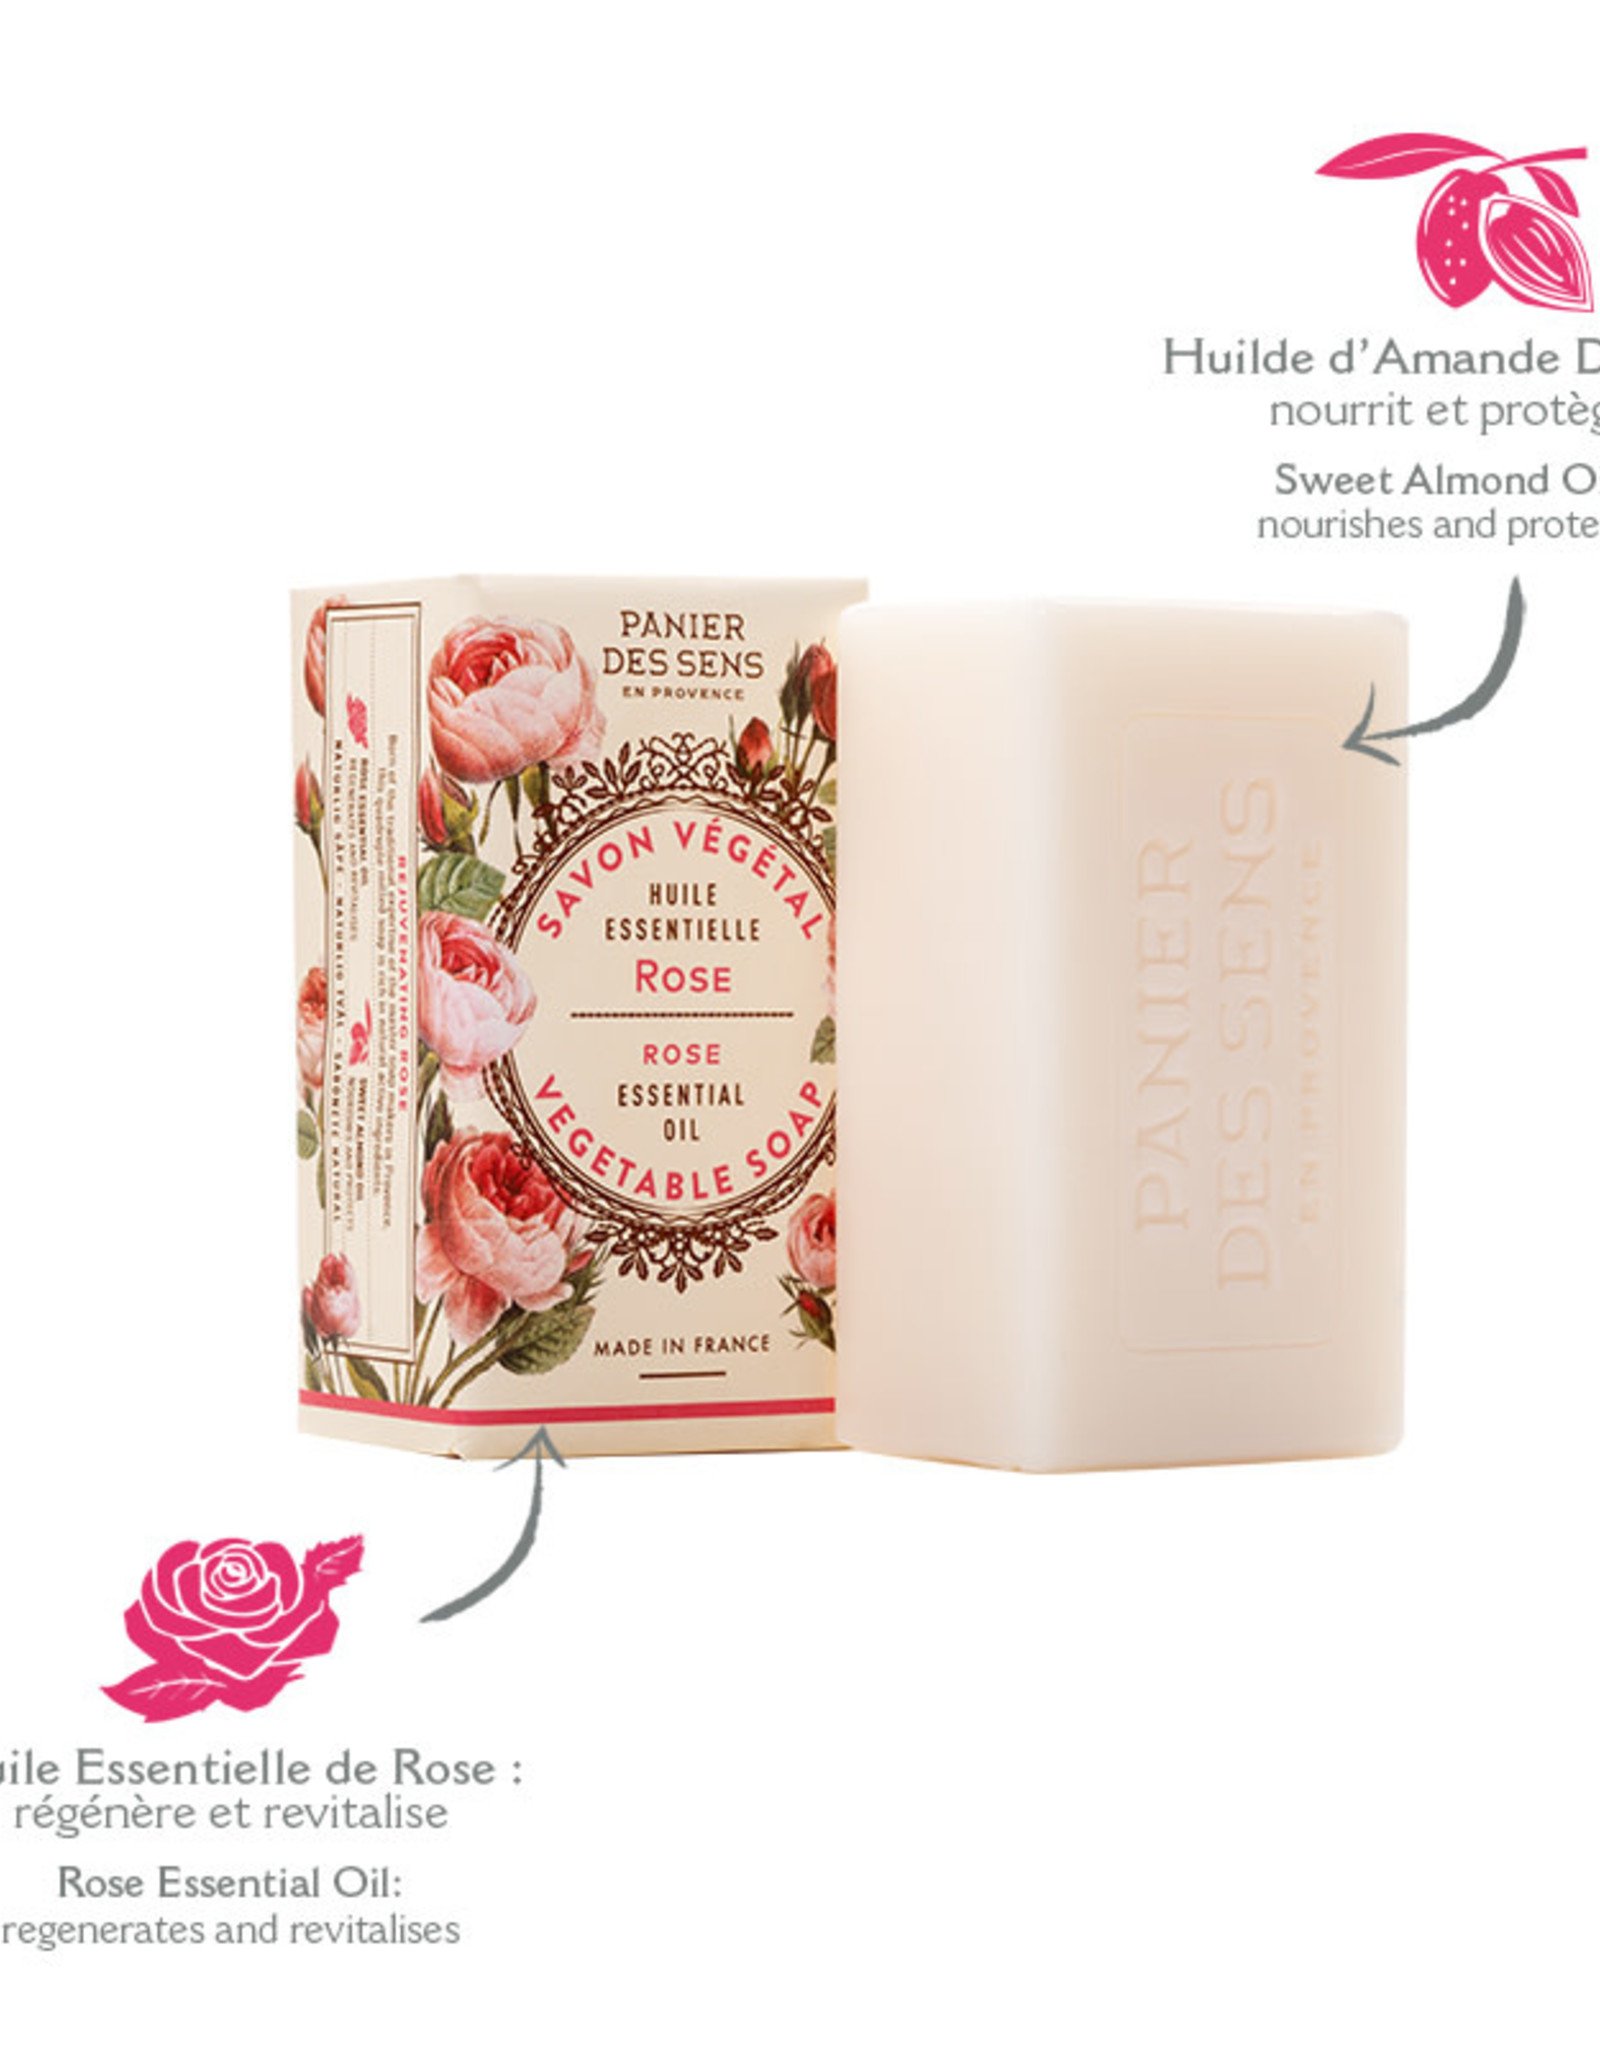 Panier Des Sens Soap Bar  "Rejuvenating Rose"  5.3 oz.  - Panier Des Sens